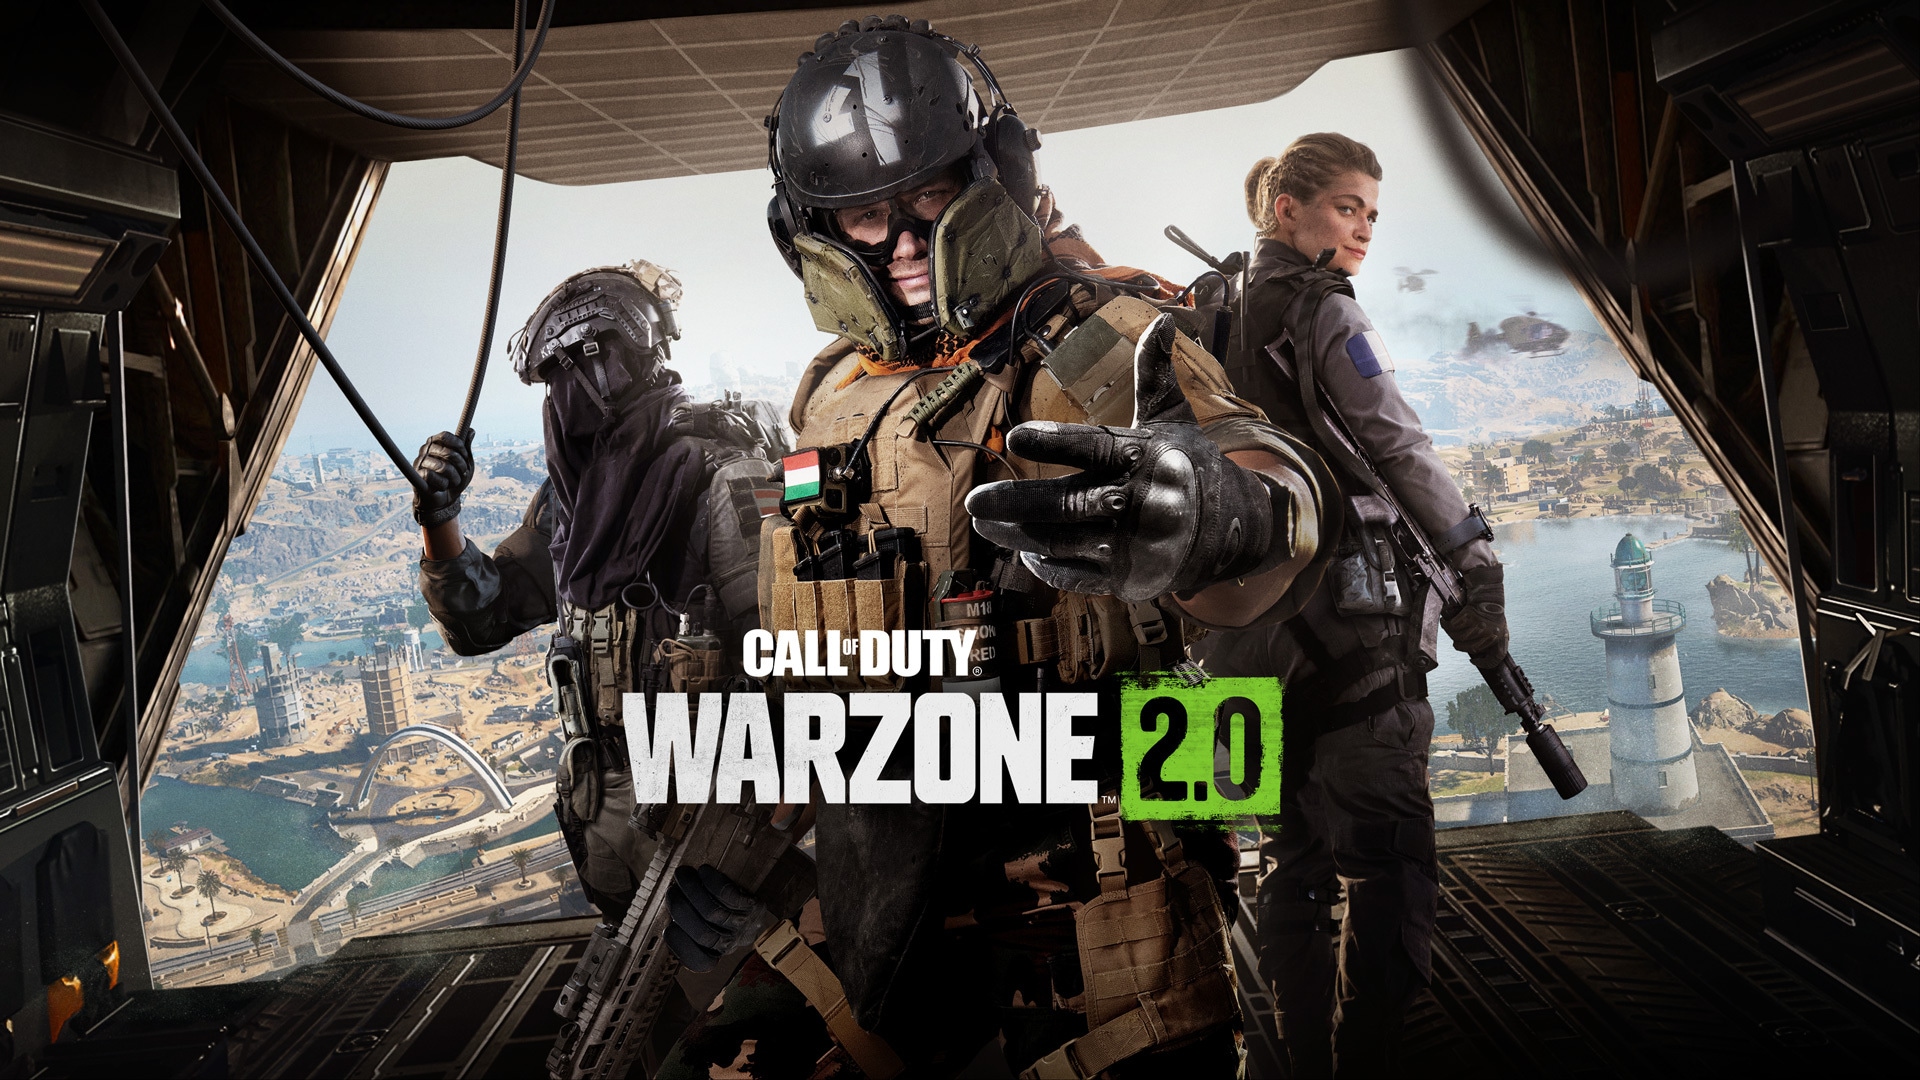 Call of Duty: Warzone 2.0 королевская битва, обзор «Нейтральной зоны»